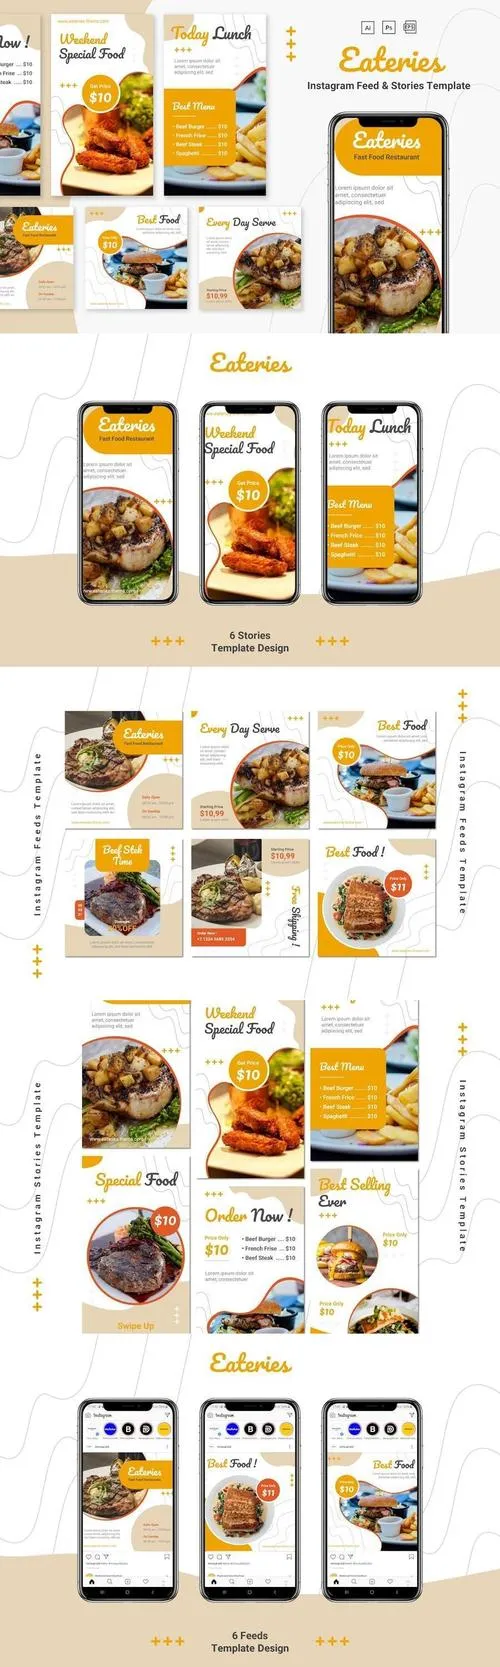 Eateries - Instagram Feeds & Stories Pack